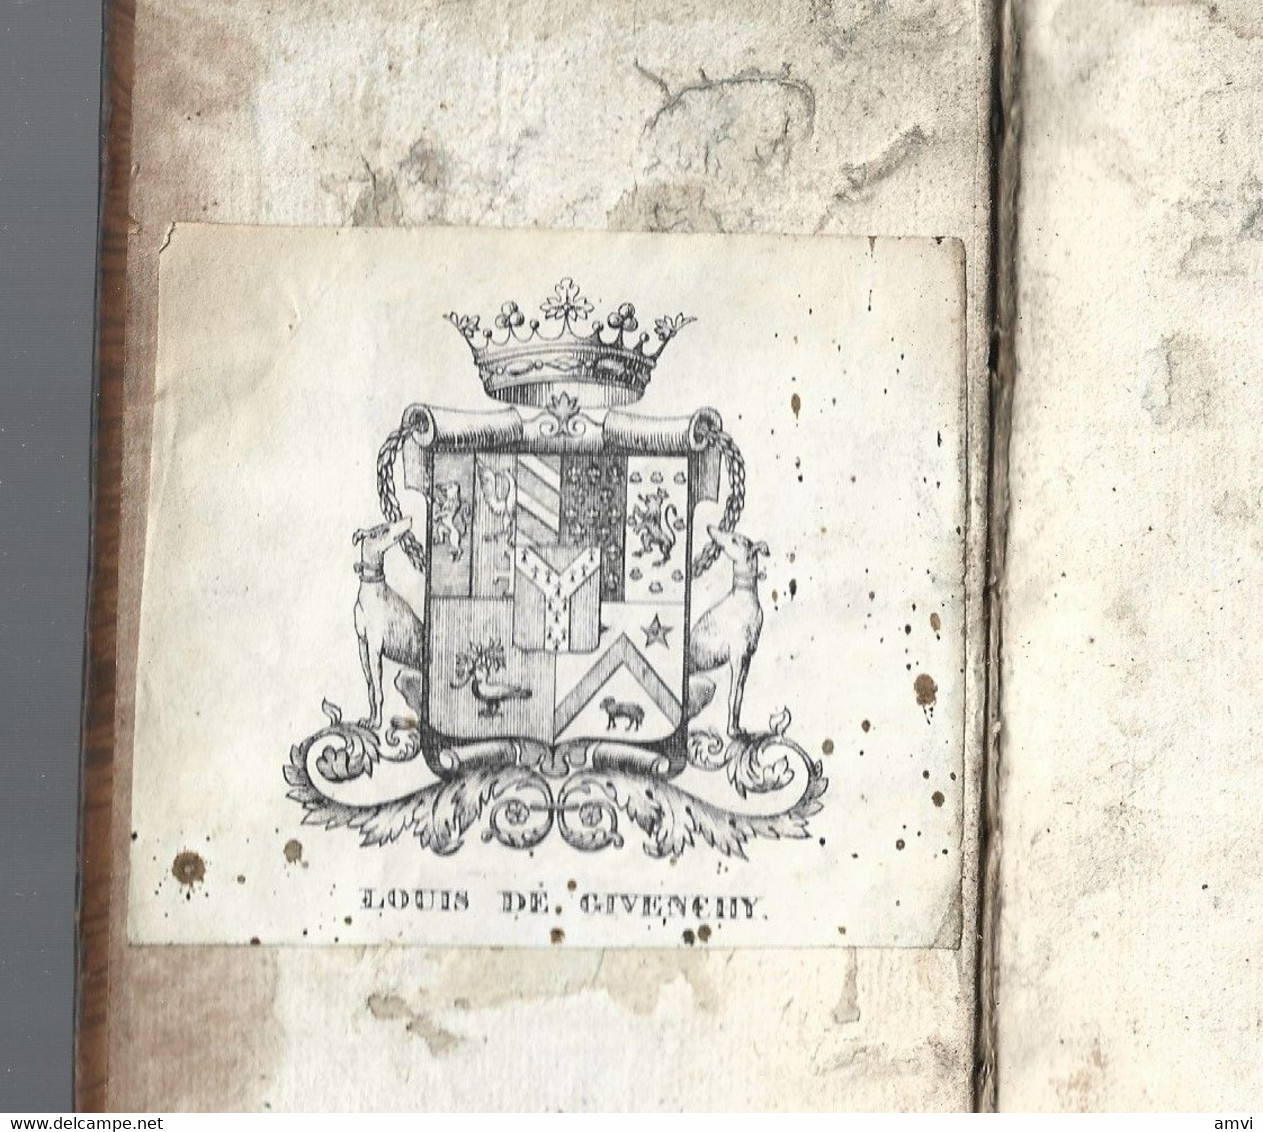 Amelot De La Houssaye  Lettre Du Cardinal D'Ossat  Amsterdam Humbert 1708 5 Volumes Exlibris Louis De Givenchy - 1701-1800